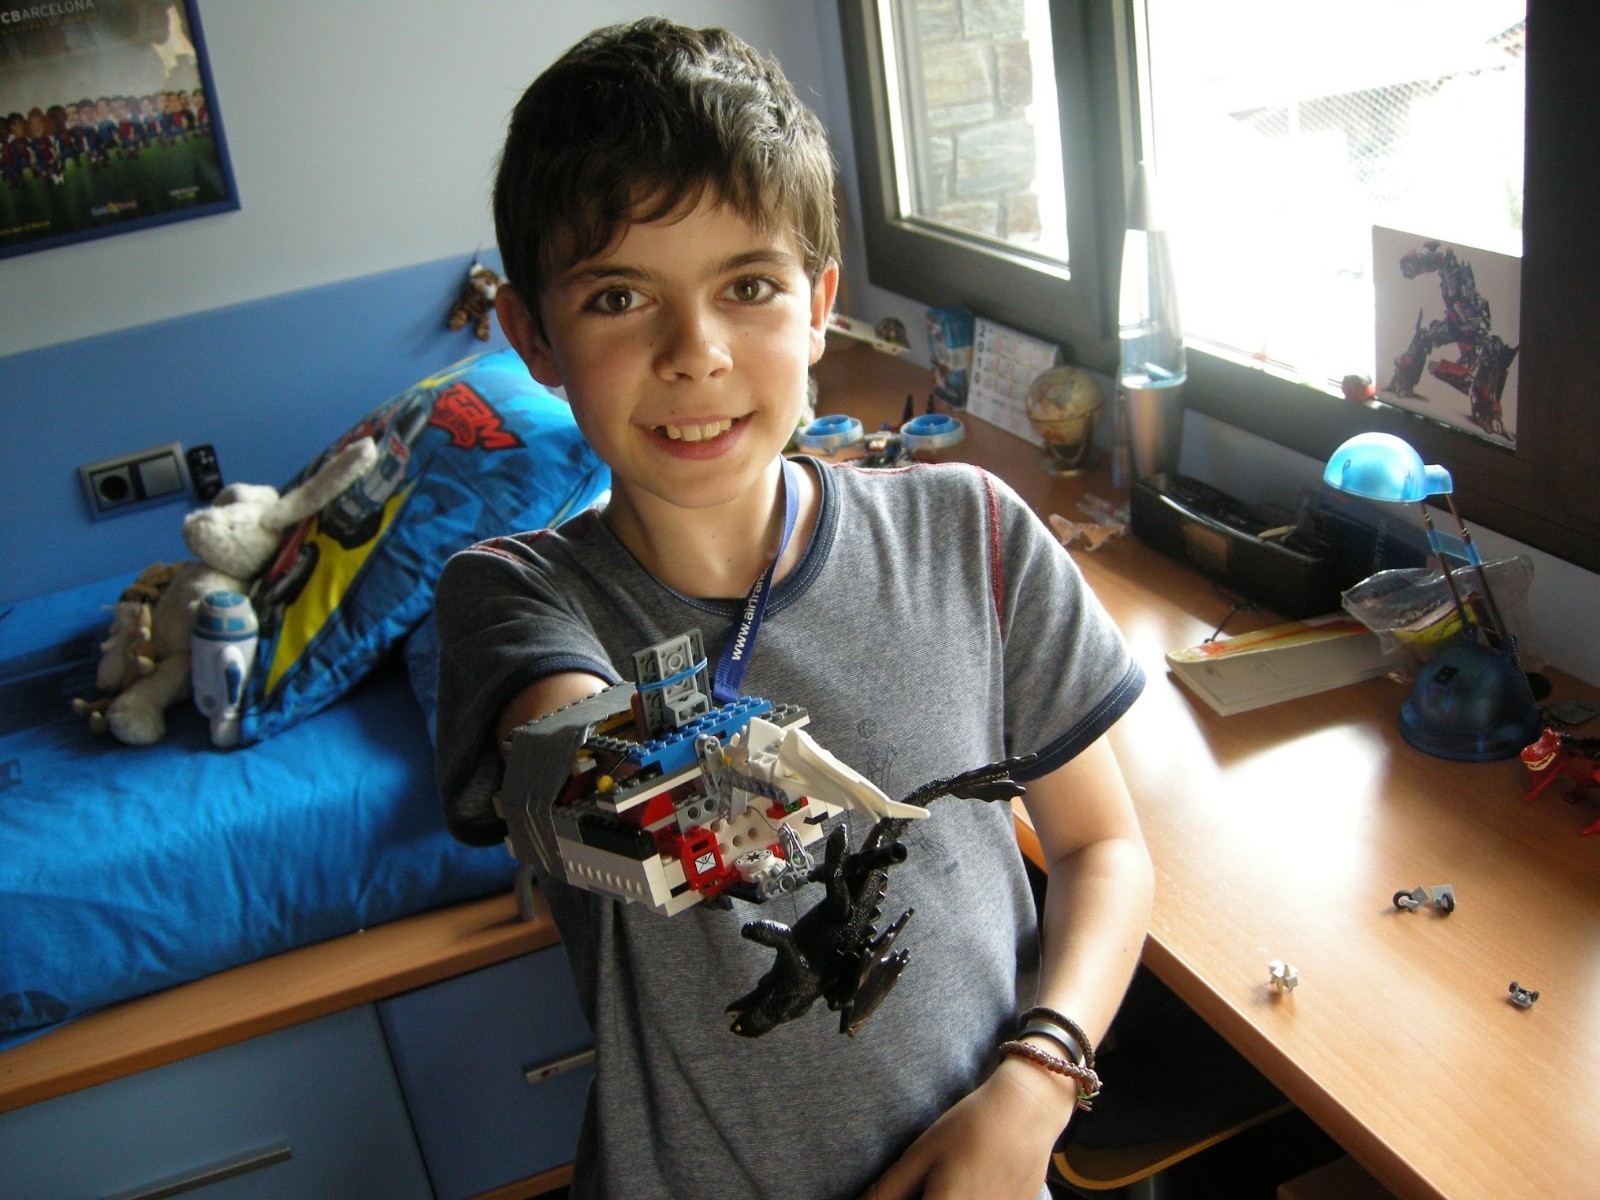 David Aguilar quando criança acompanhado de suas criações de Lego  (Foto: Pau Fabregat/National Géographic)